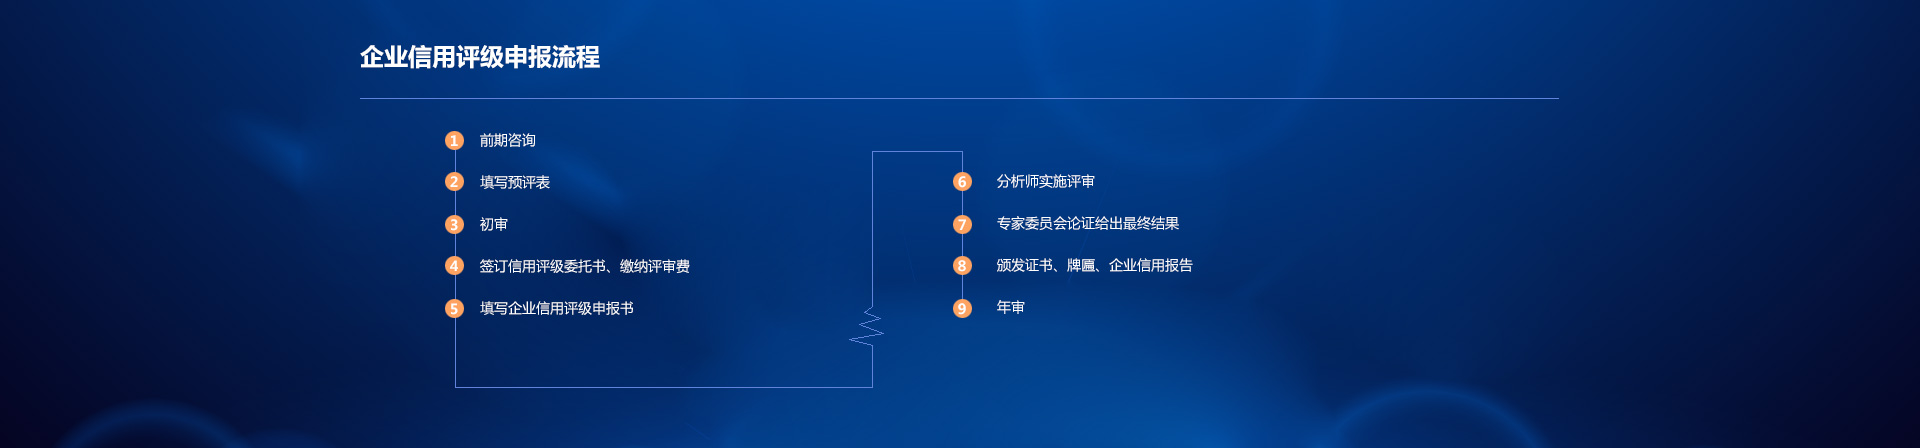  华夏众诚（北京）国际信用评价有限公司